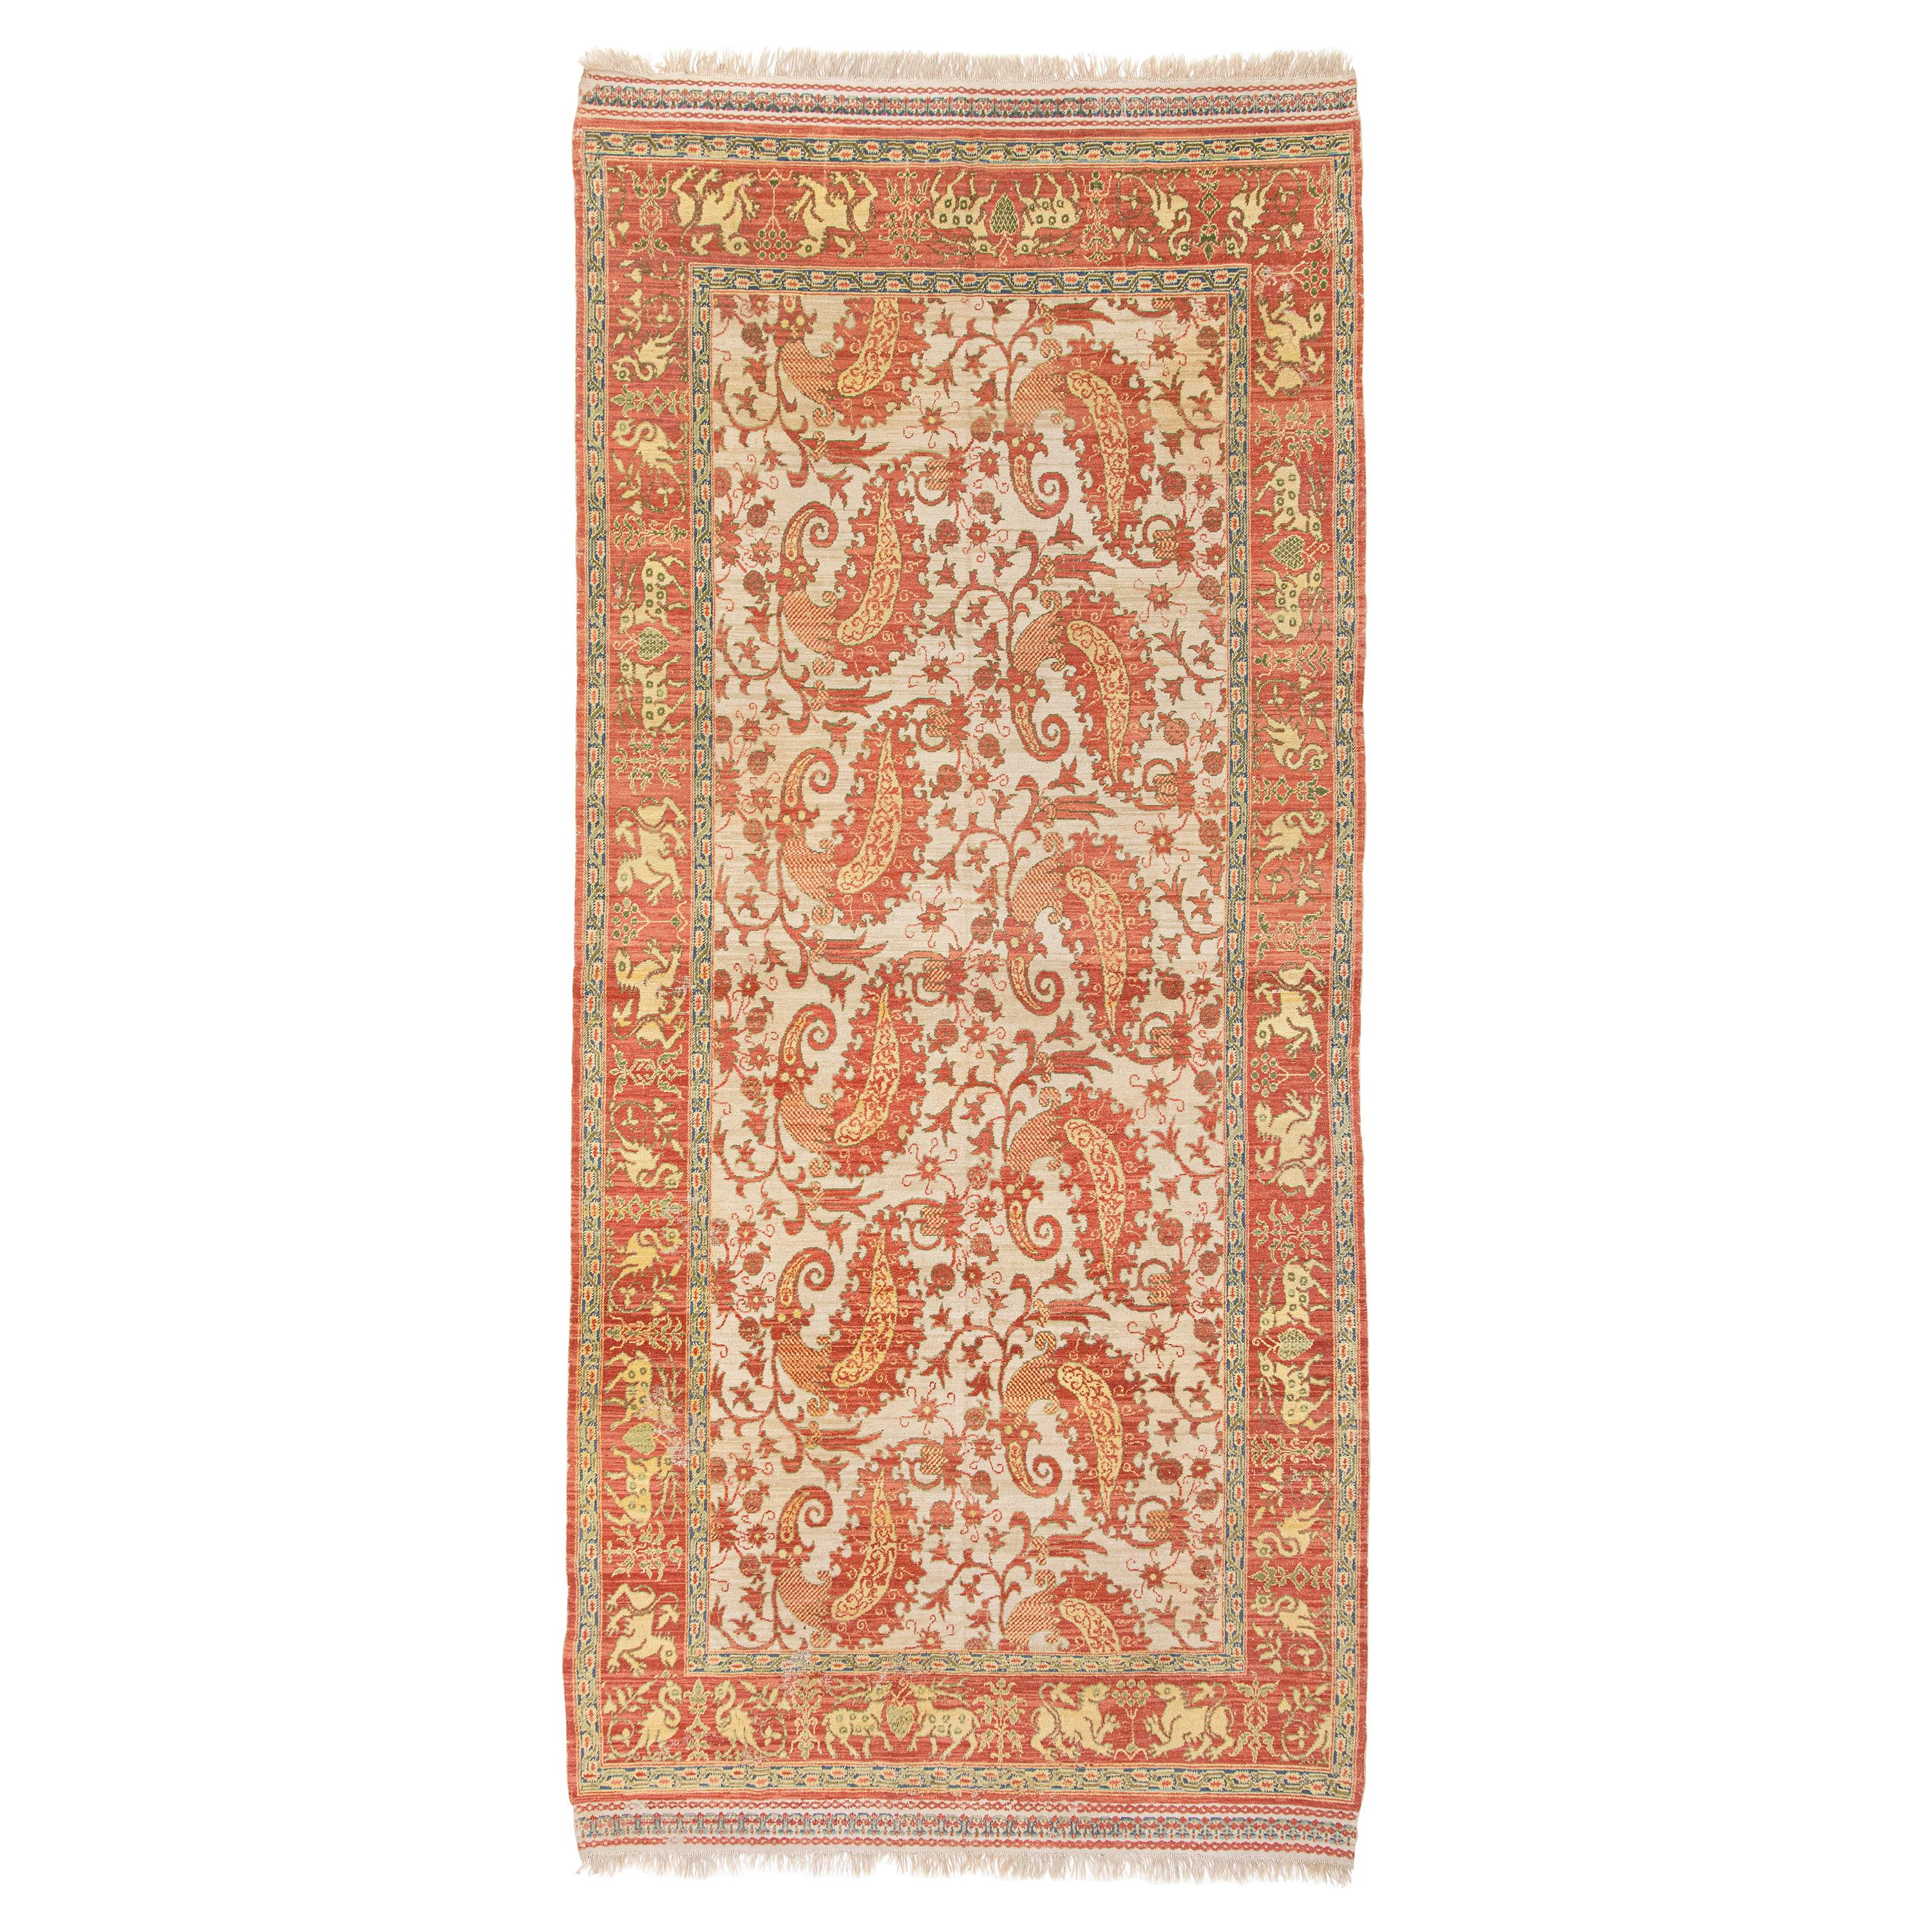 Antiker portugiesischer Teppich, um 1800, antik